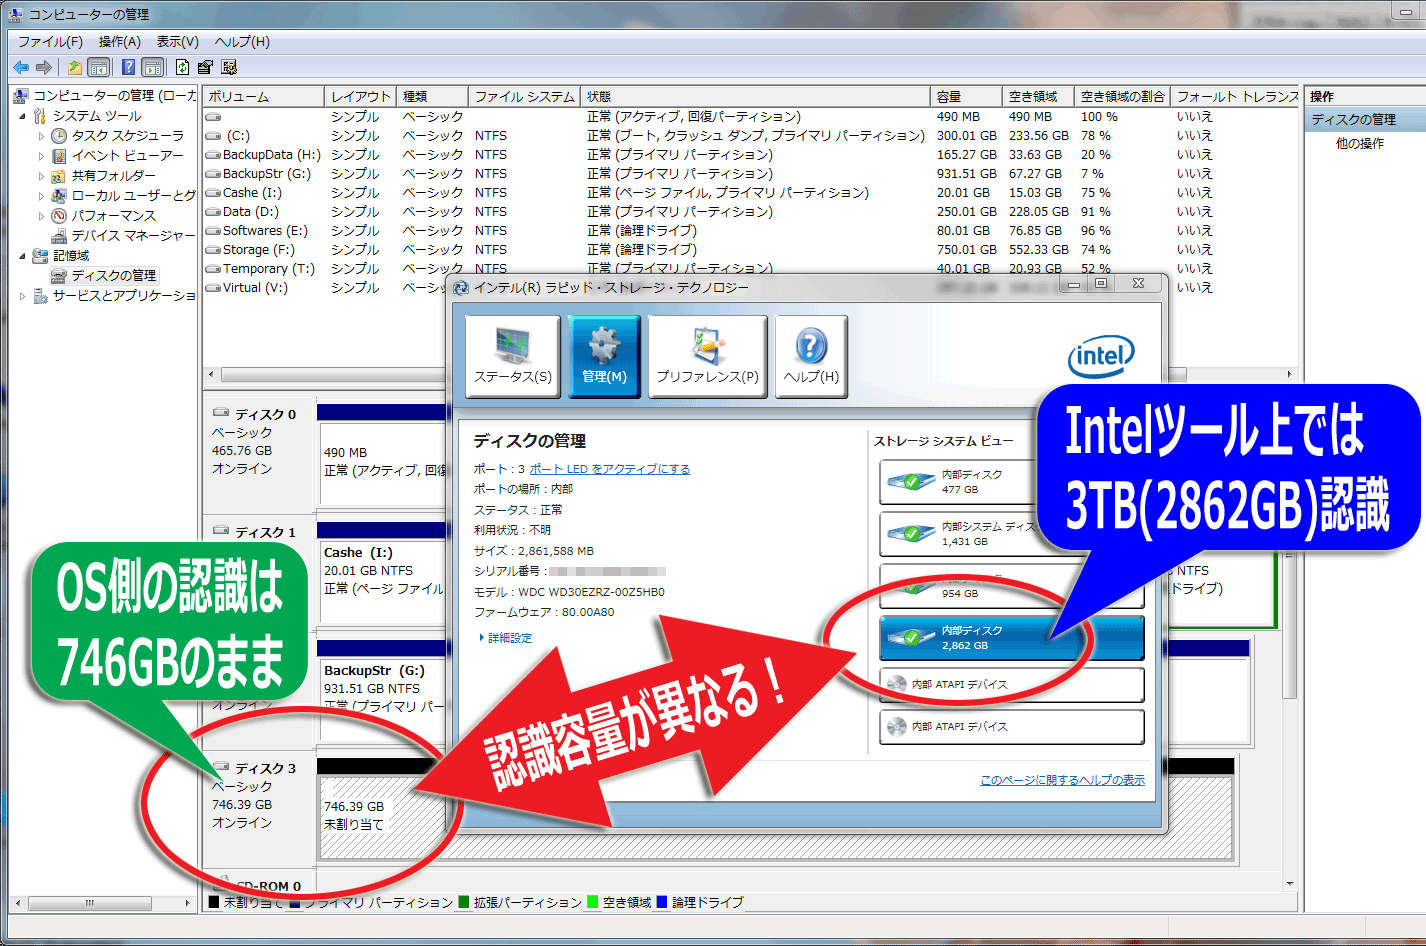 Intelツール上では3TBが認識されているが、Windows上では746GBの認識のまま